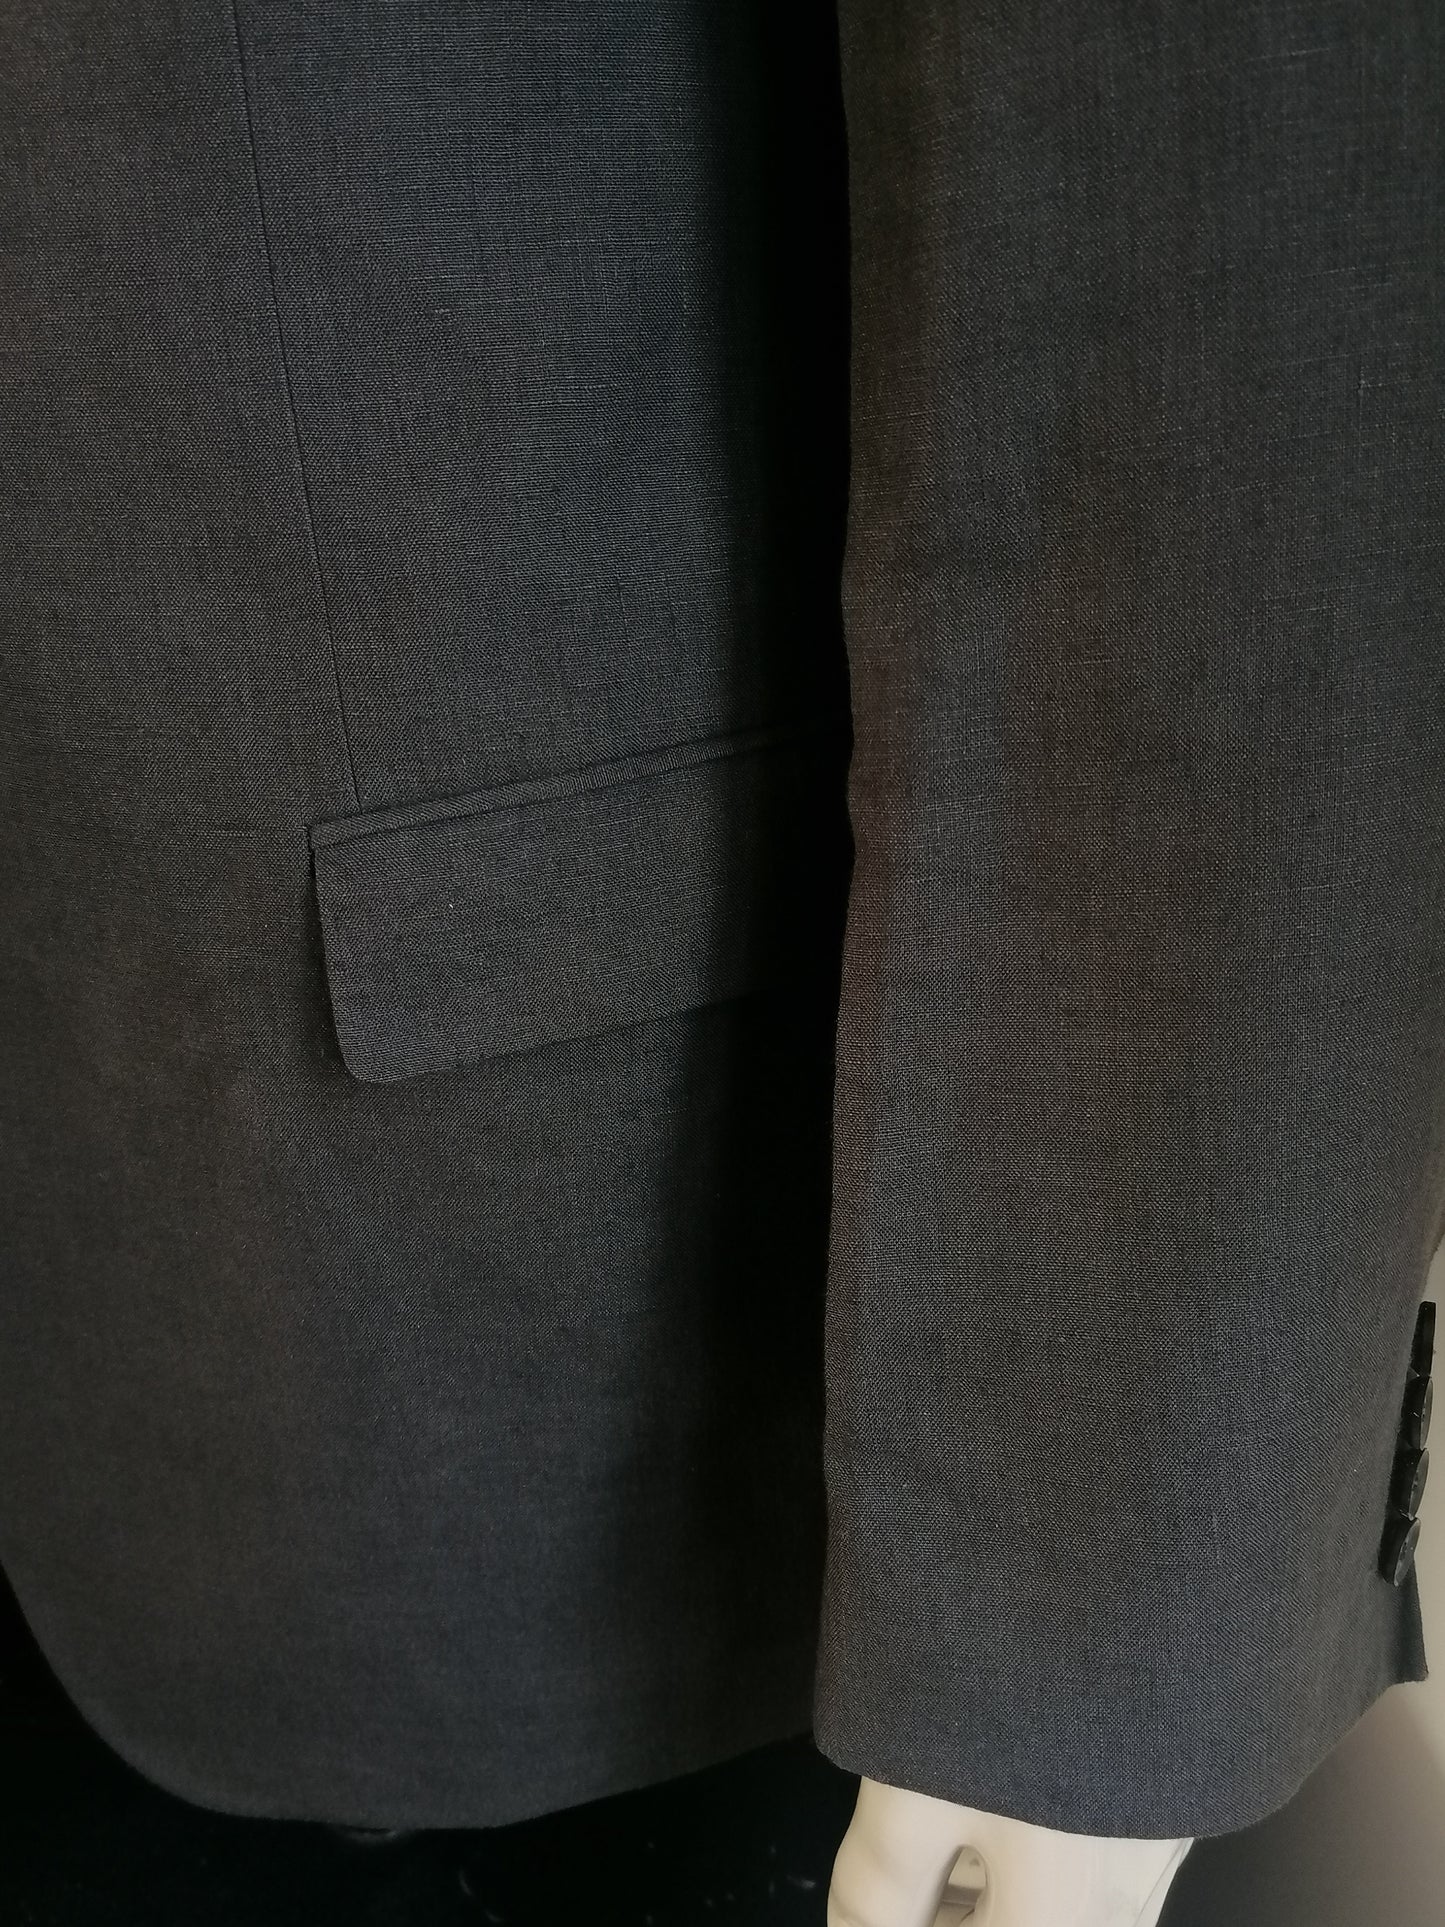 Hugo Boss linen costume. Dark gray colored. Size 52 / L.